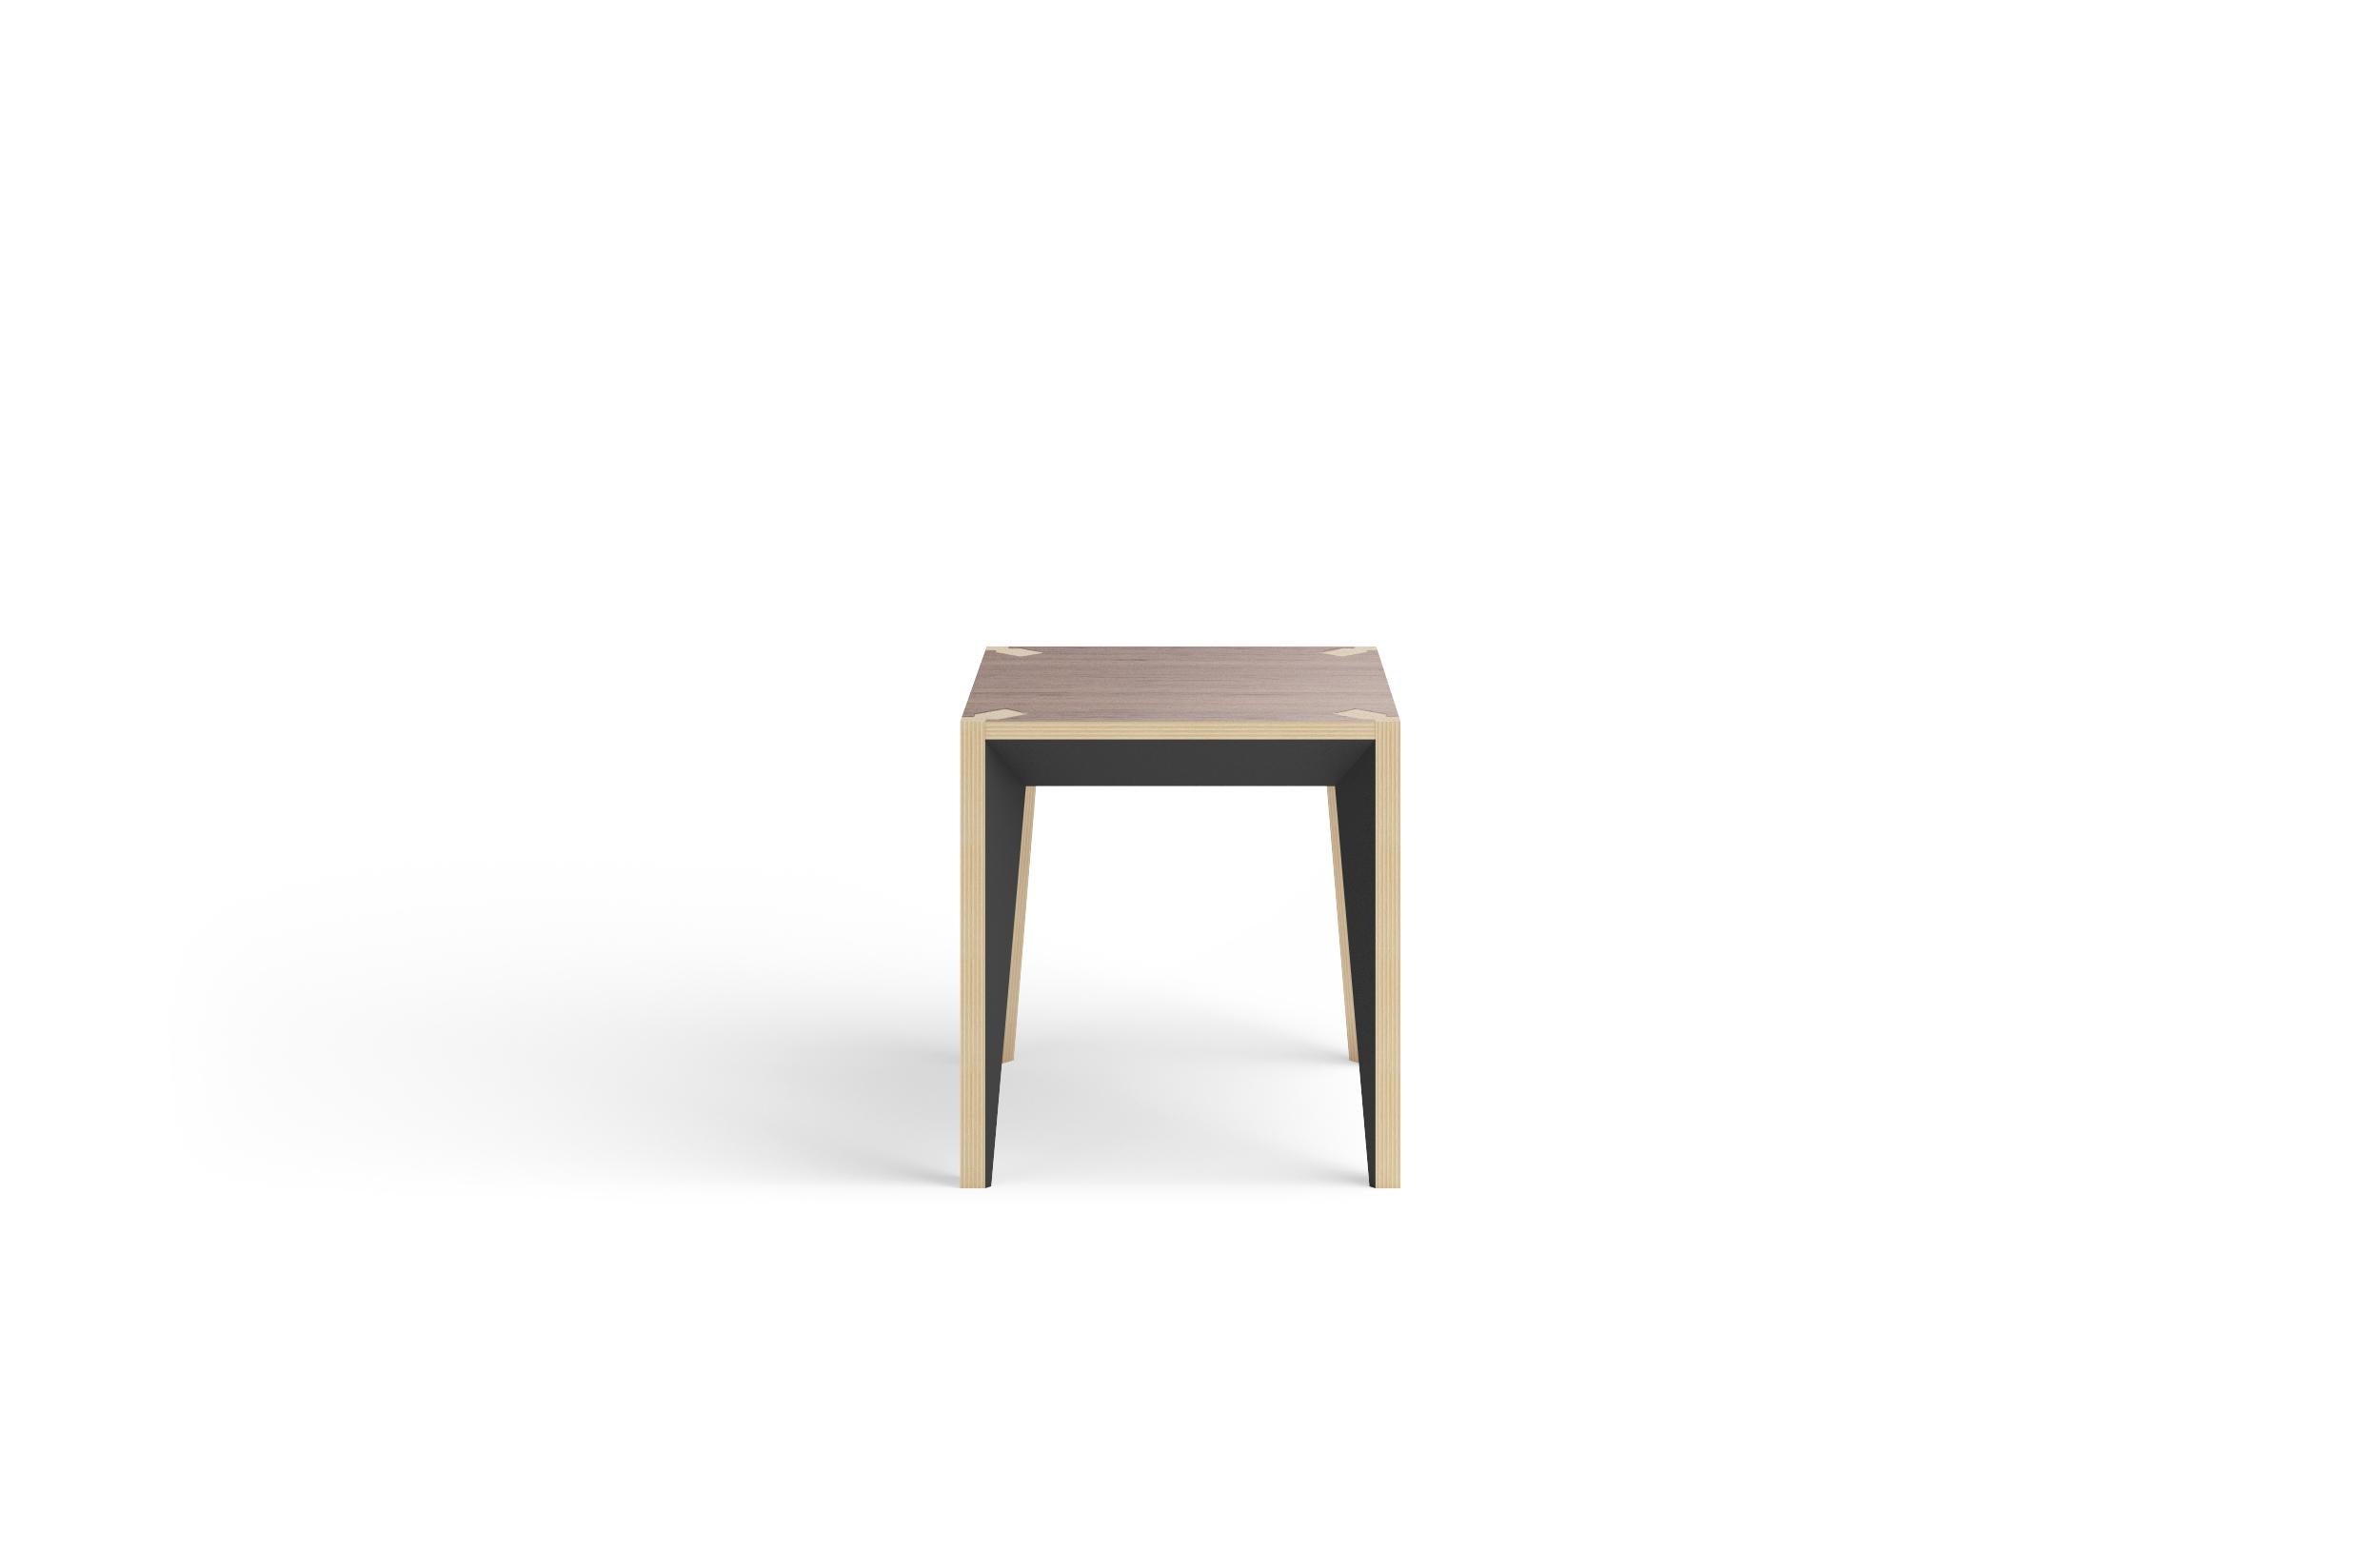 Faisant partie de la série MiMi, cette table d'appoint ou tabouret minimaliste et polyvalente met en valeur la maison et le bureau. La géométrie nette et facettée et les surfaces peintes ajoutent de la profondeur et de la sophistication, tandis que